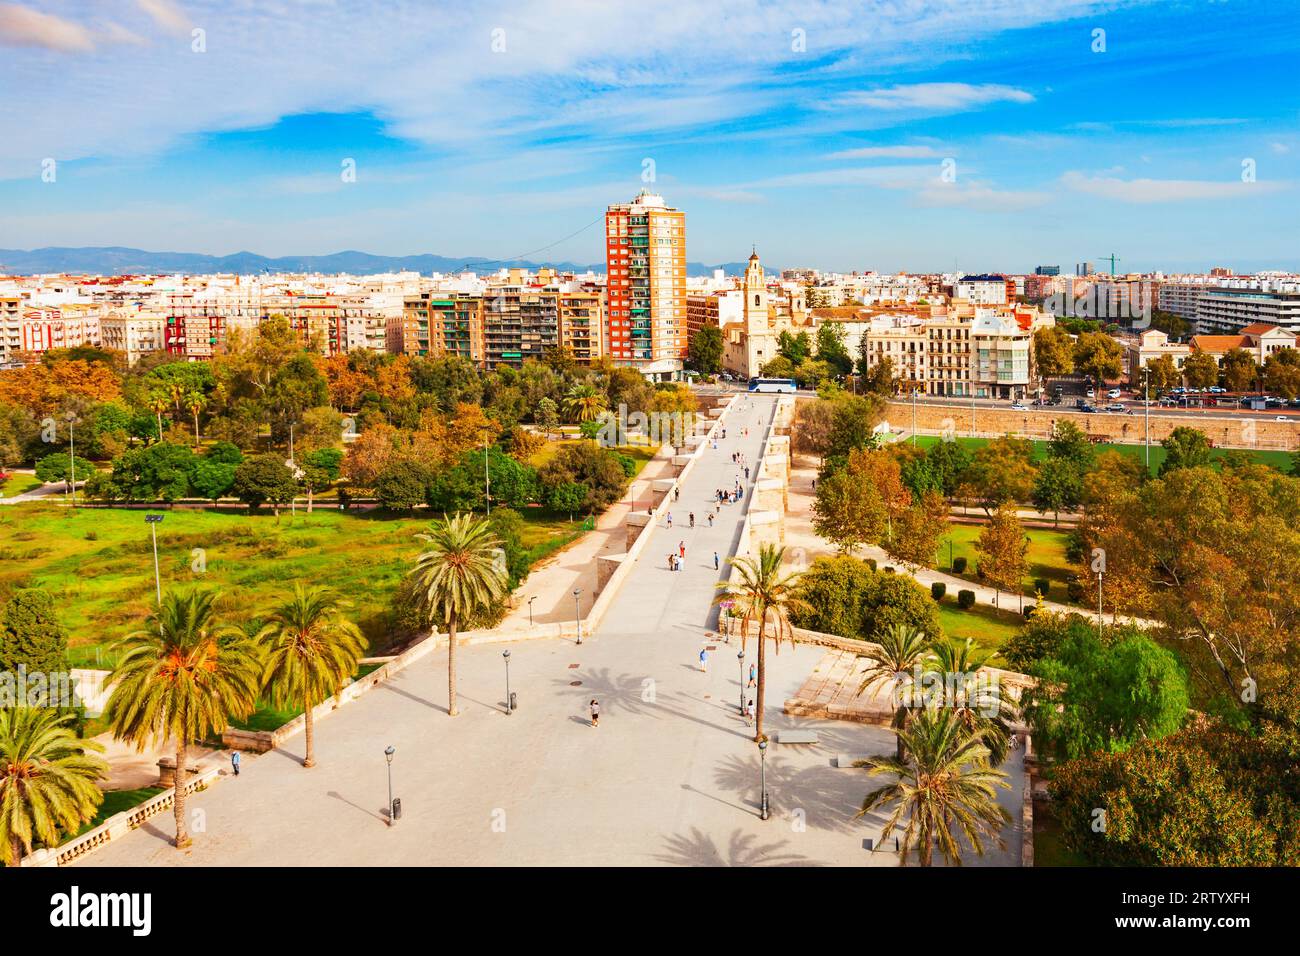 Vista panoramica aerea della città di Valencia dalla porta di Serrani o dalle Torri di Serrano. Valencia è il terzo comune più popolato della Spagna. Foto Stock